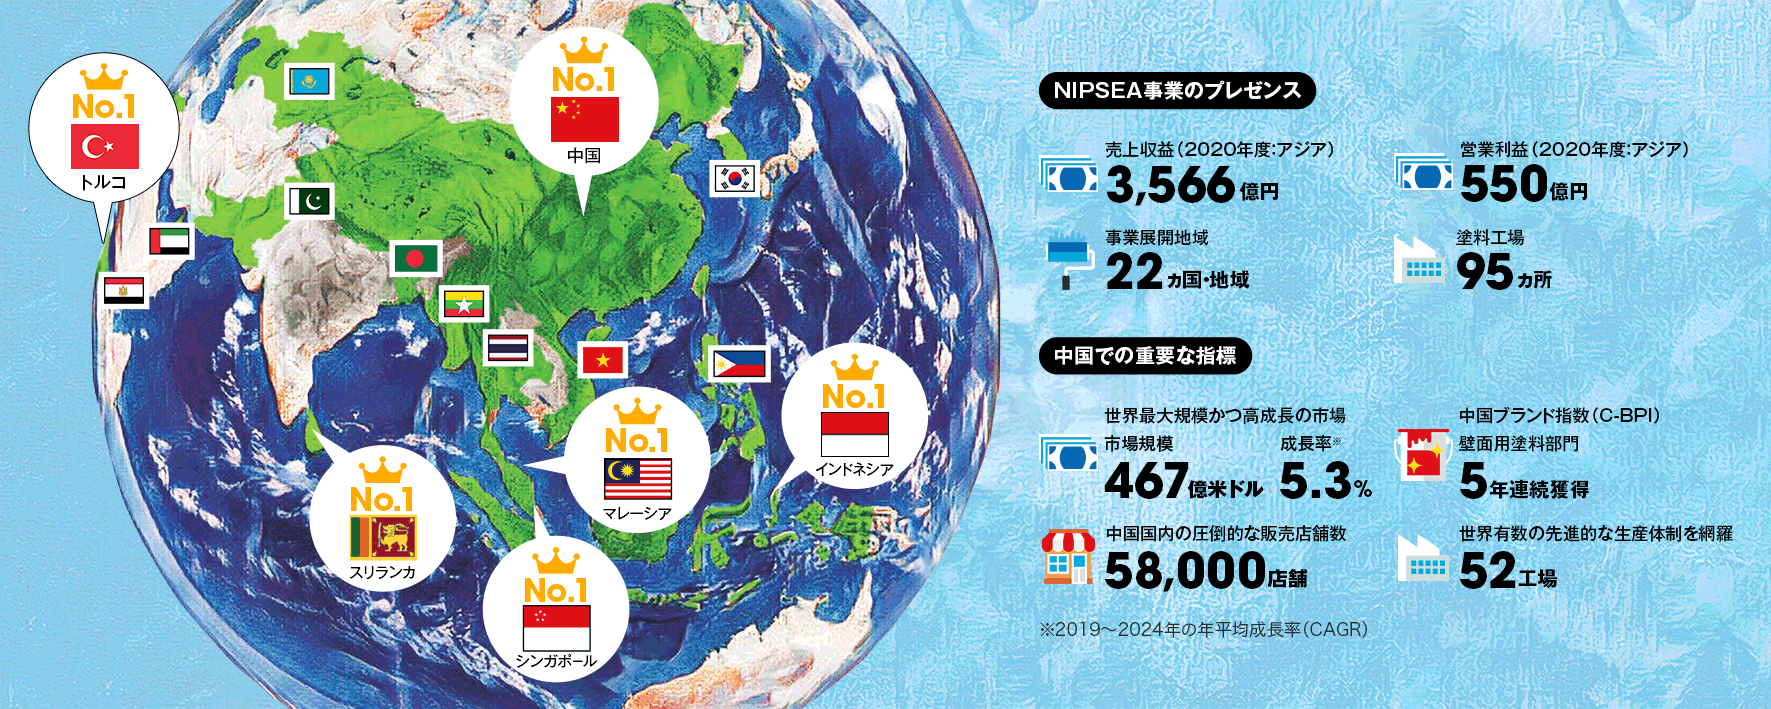 5ヵ国で市場シェアNo.1、特に中国では現地化が奏功し、高成長を達成の実績画像